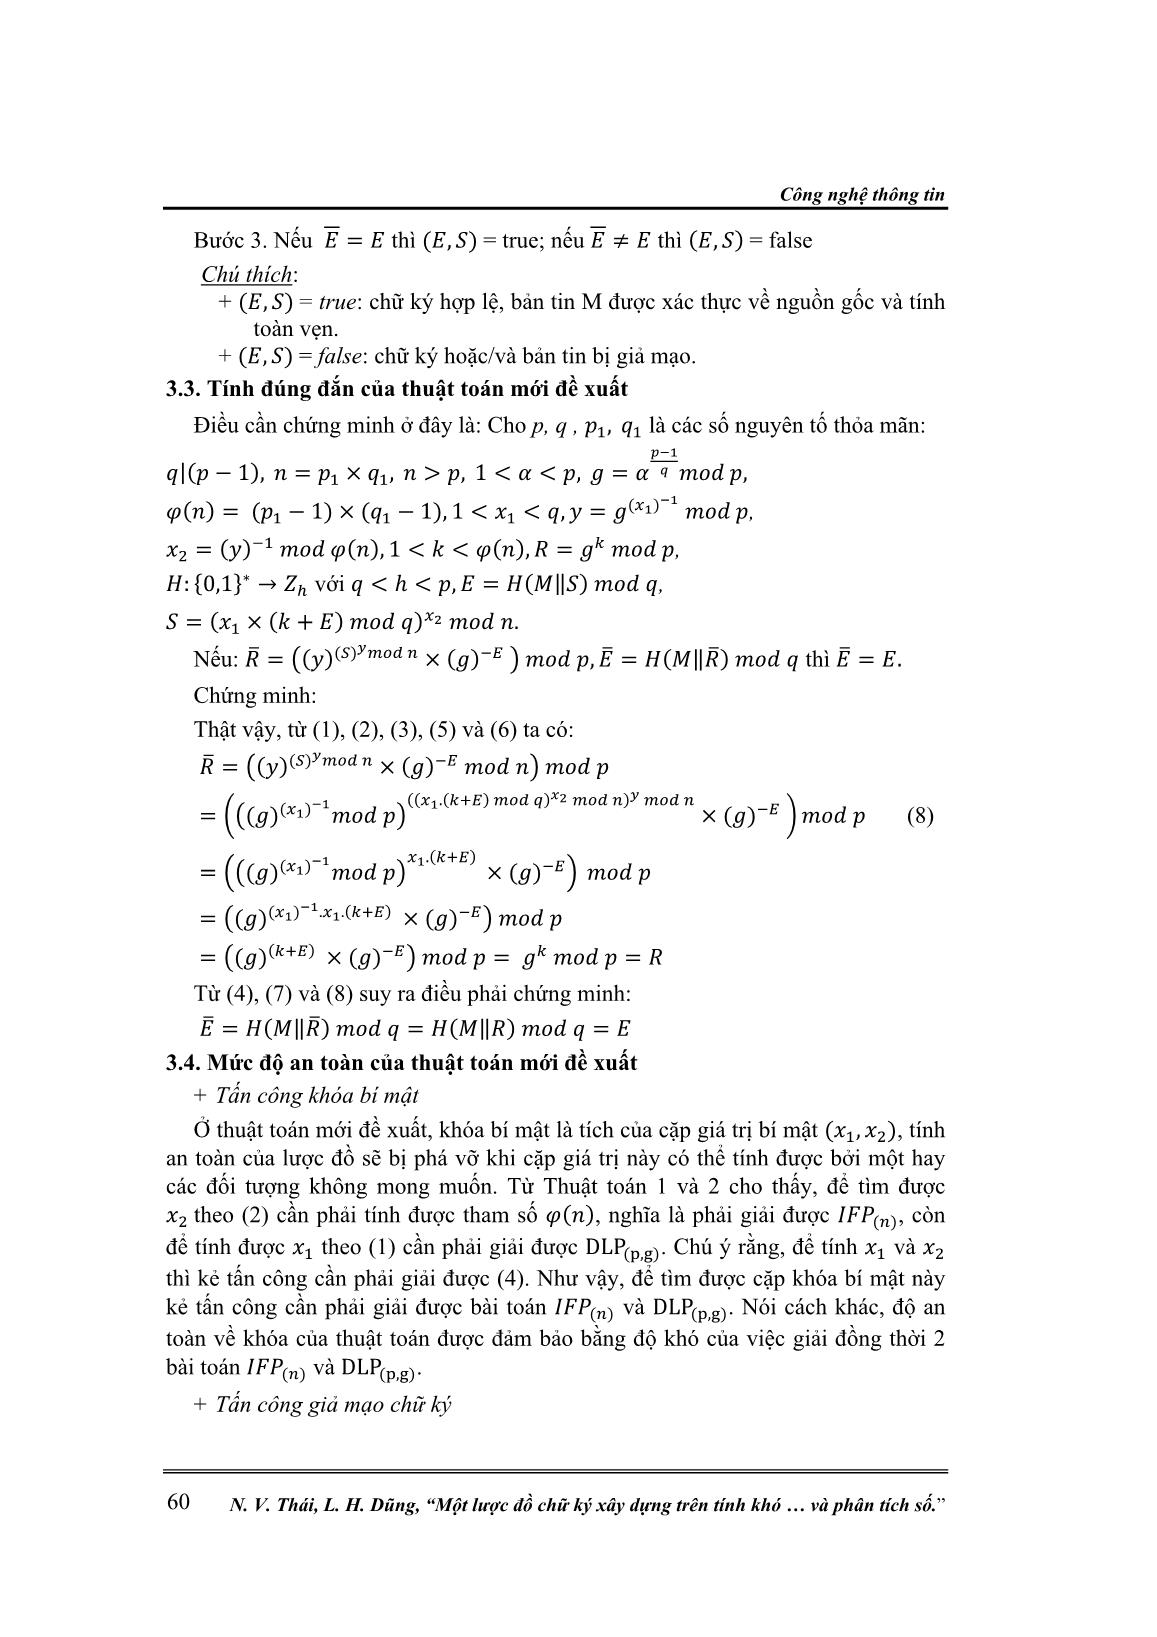 Một lược đồ chữ ký xây dựng trên tính khó của việc giải đồng thời 2 bài toán logarit rời rạc và phân tích số trang 4